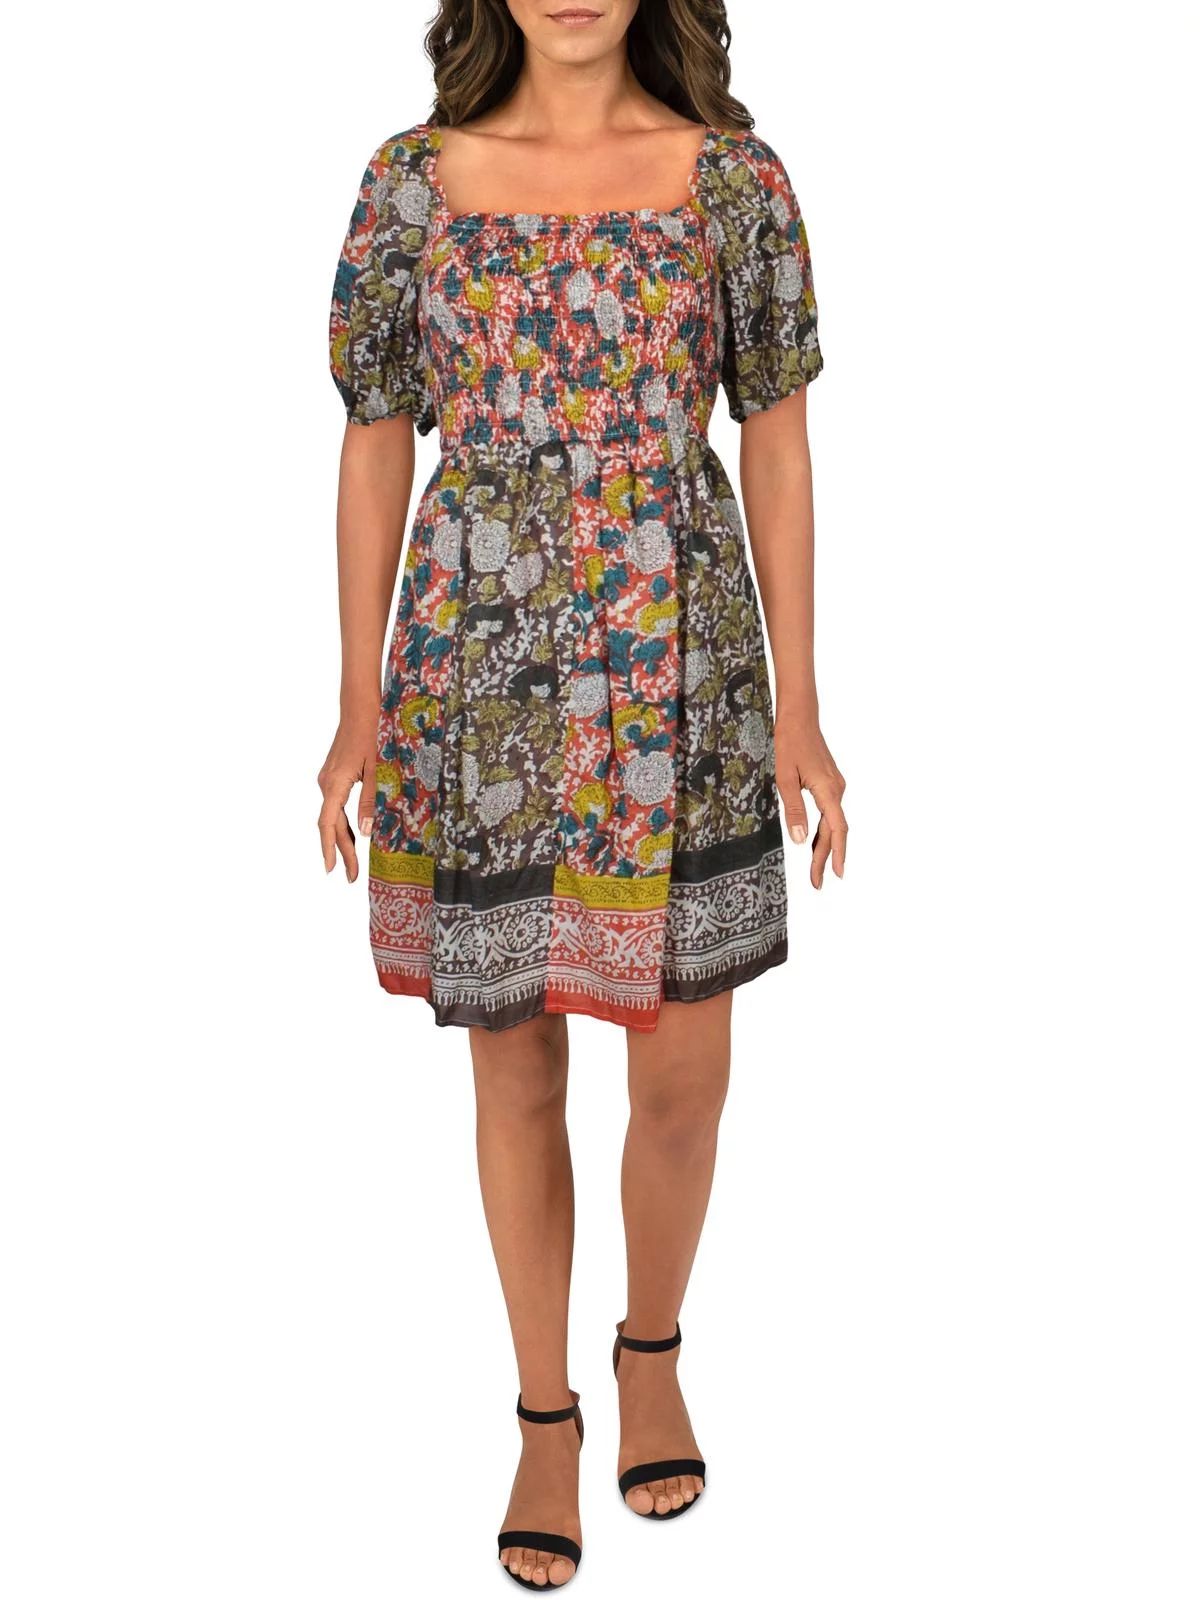 VELVET BY GRAHAM & SPENCER Womens Cotton Printed Mini Dress Multi S | Walmart (US)